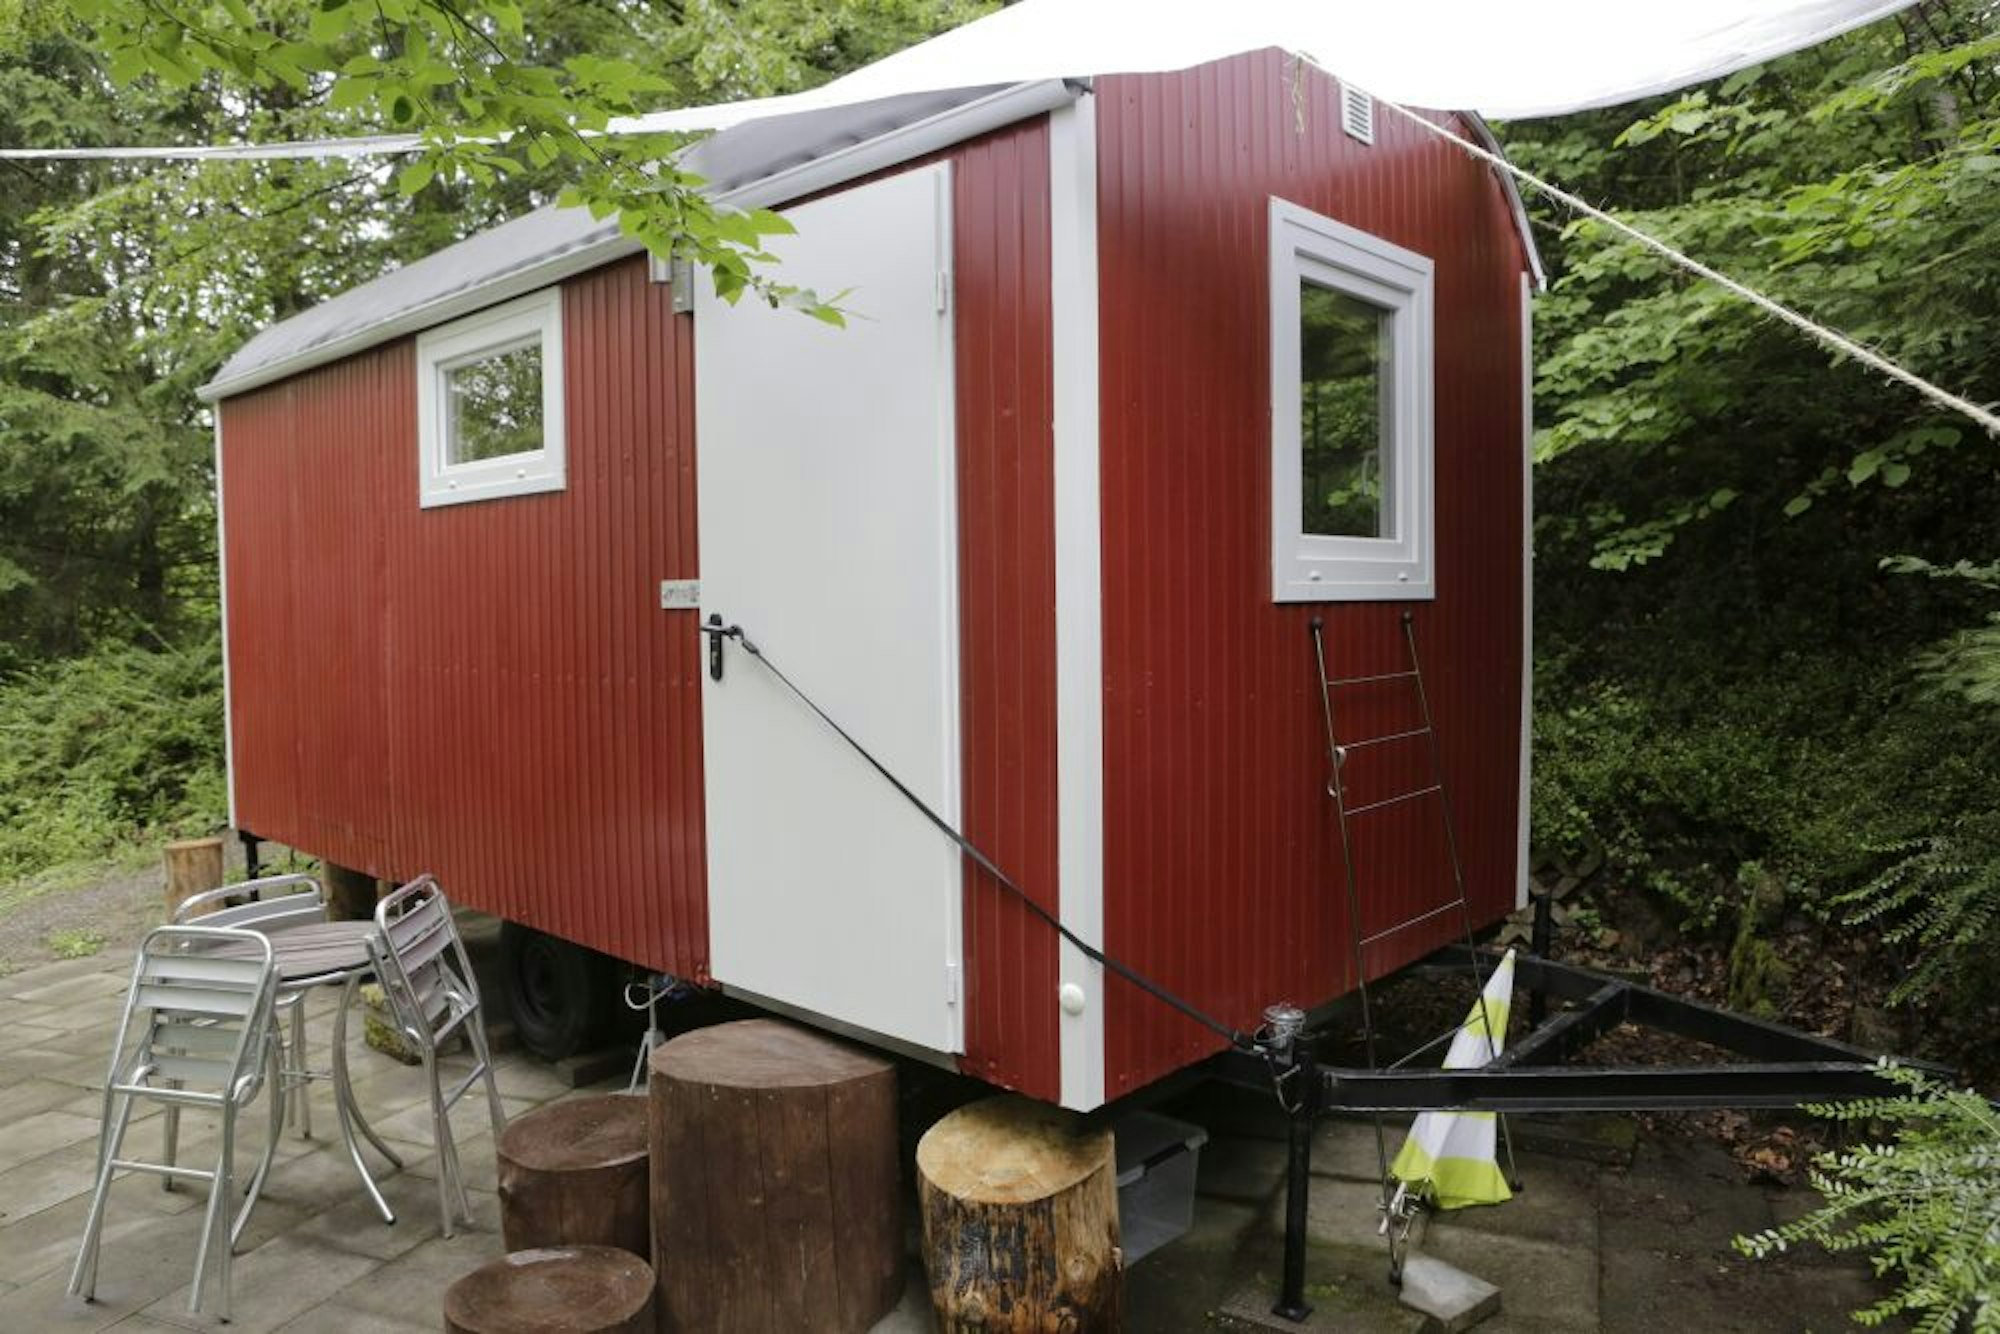 Ausprobieren kann man das hüllenlose Camping in Lindlar auch. Dafür hat der Verein Helios einen Bauwagen hergerichtet und Rotkehlchen getauft.